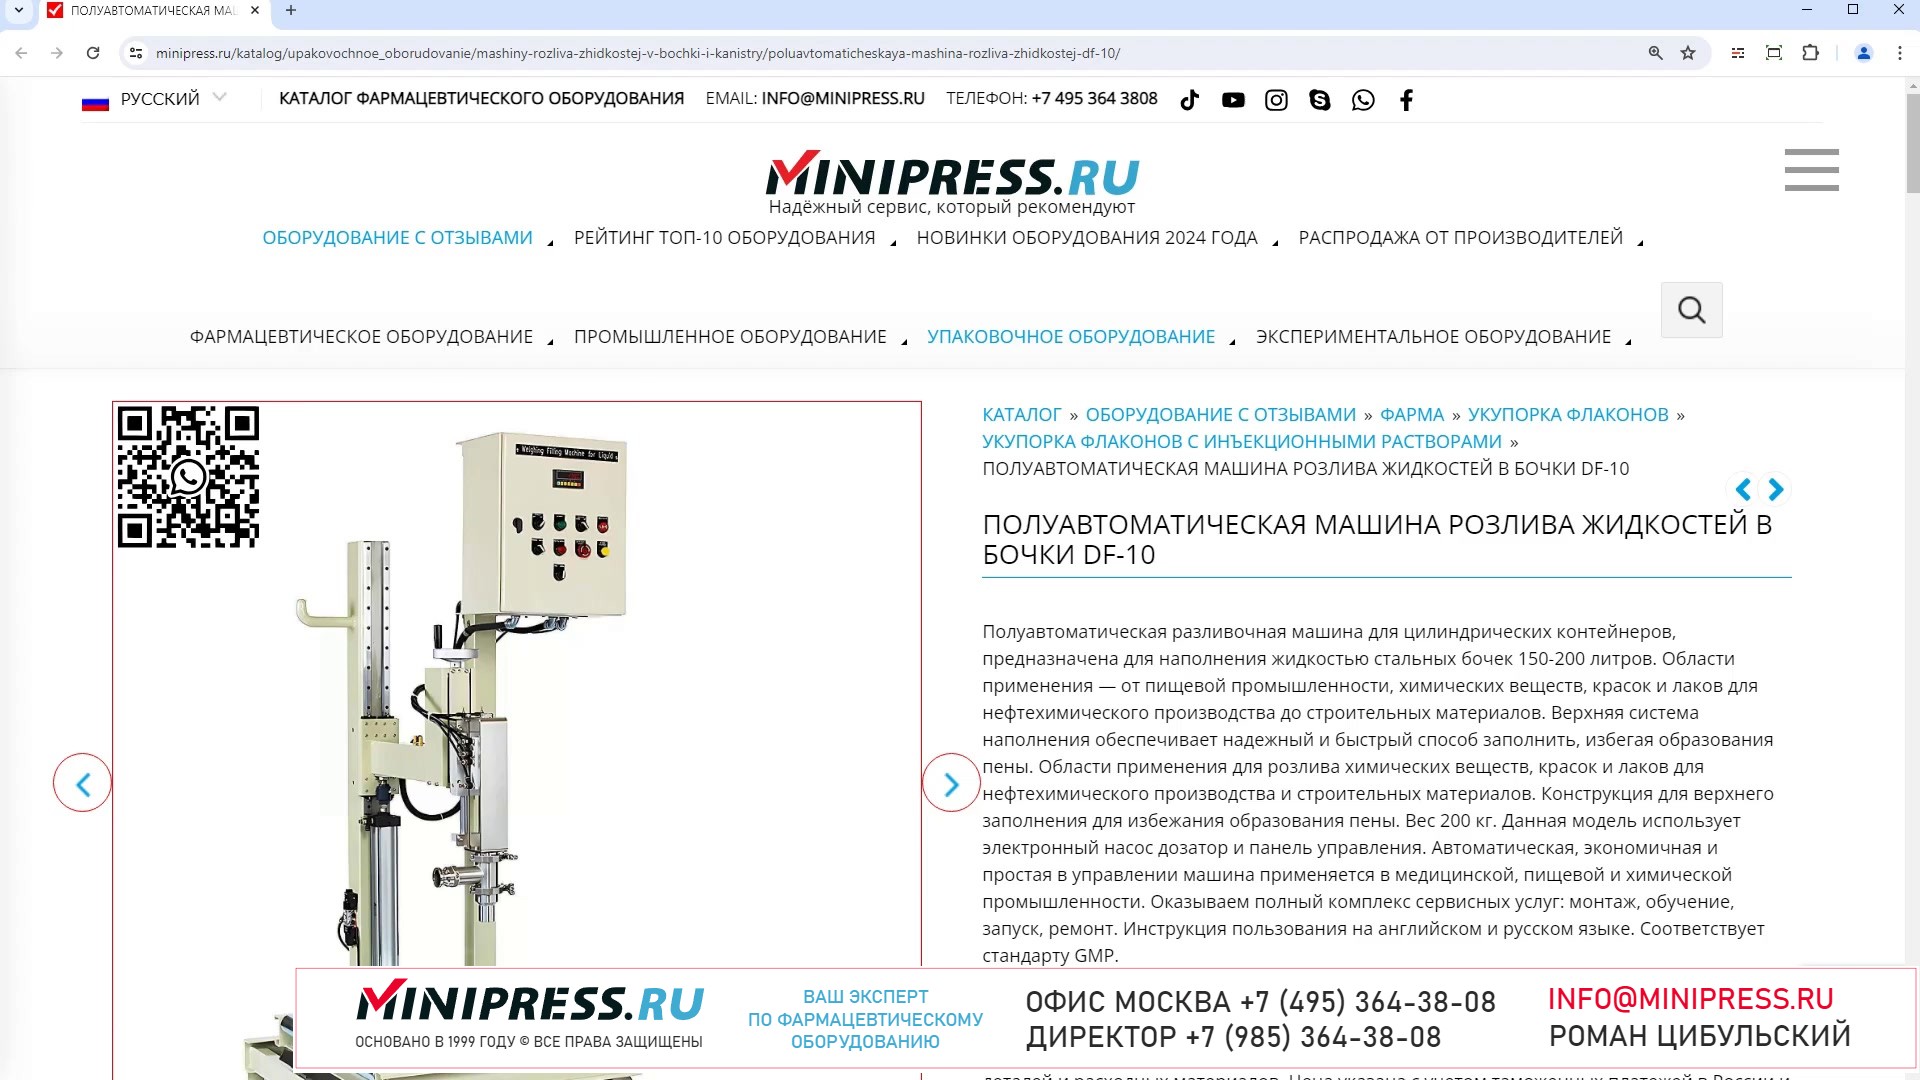 Minipress.ru Полуавтоматическая машина розлива жидкостей в бочки DF-10